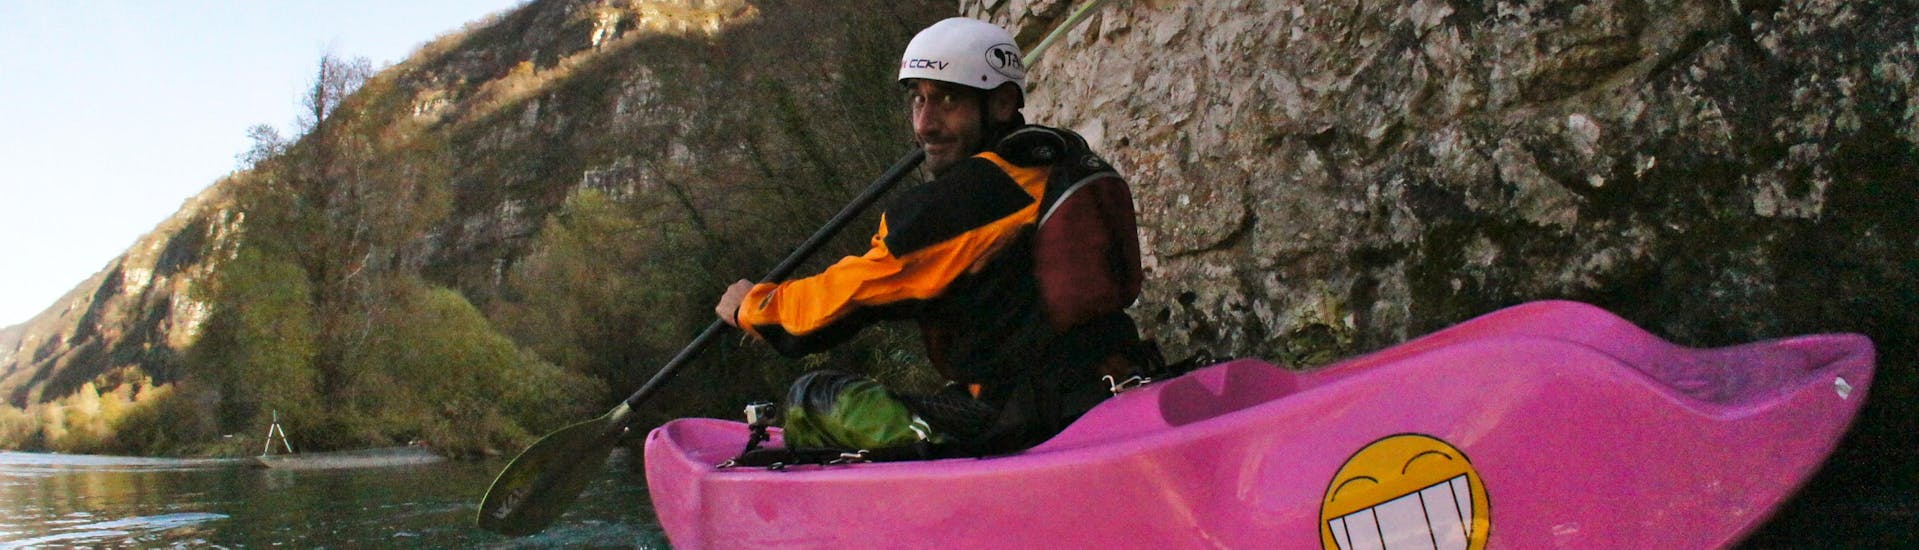 Leichte Kayak & Kanu-Tour in Castione Andevenno - Adda.